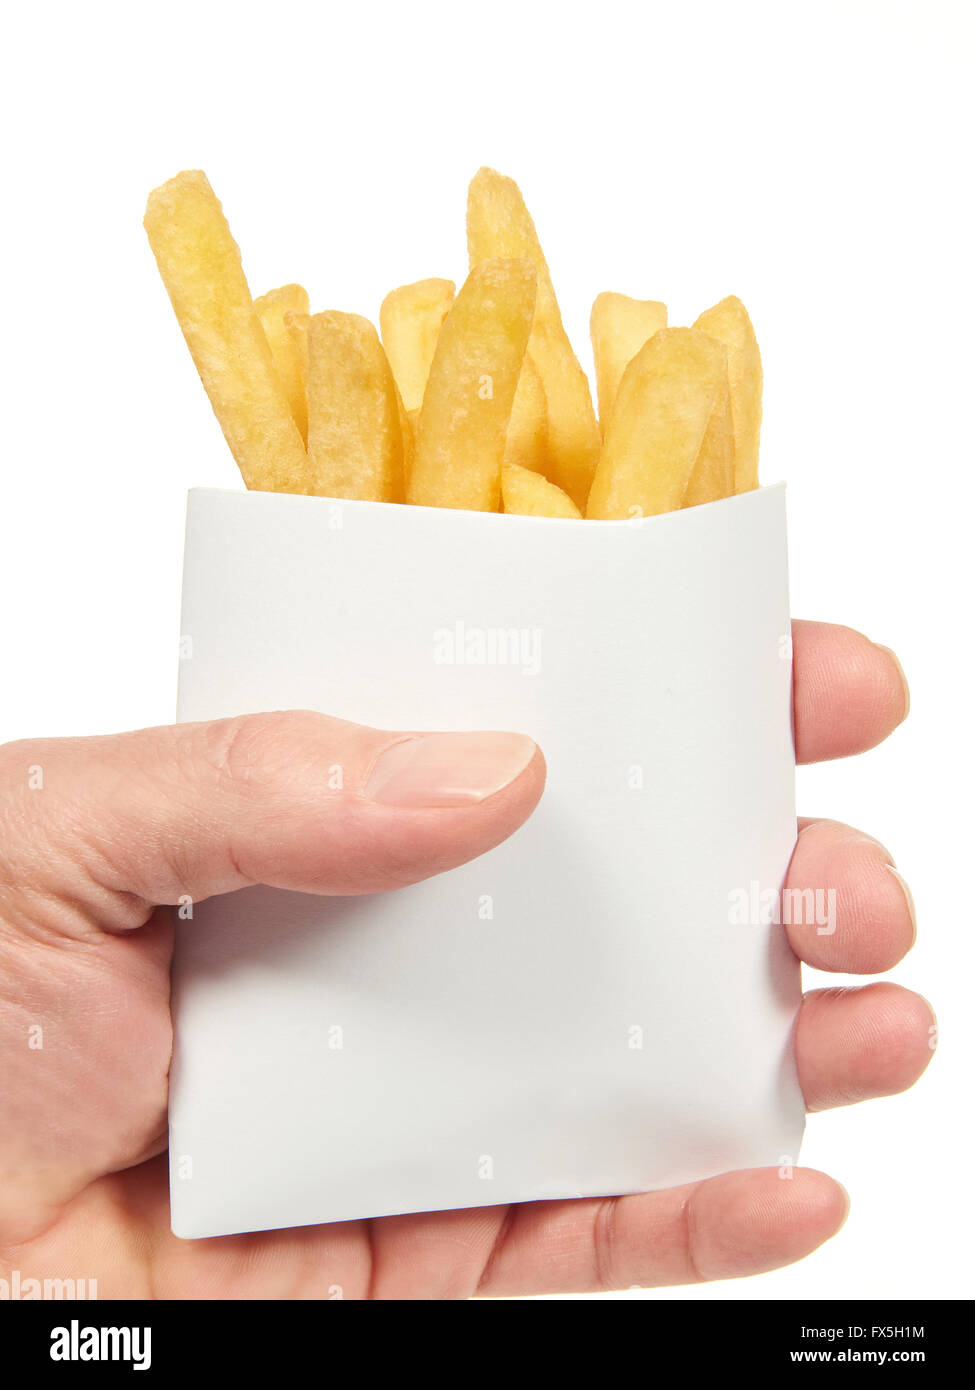 Mano sujetando las patatas fritas en una bolsa de papel blanco Fotografía  de stock - Alamy